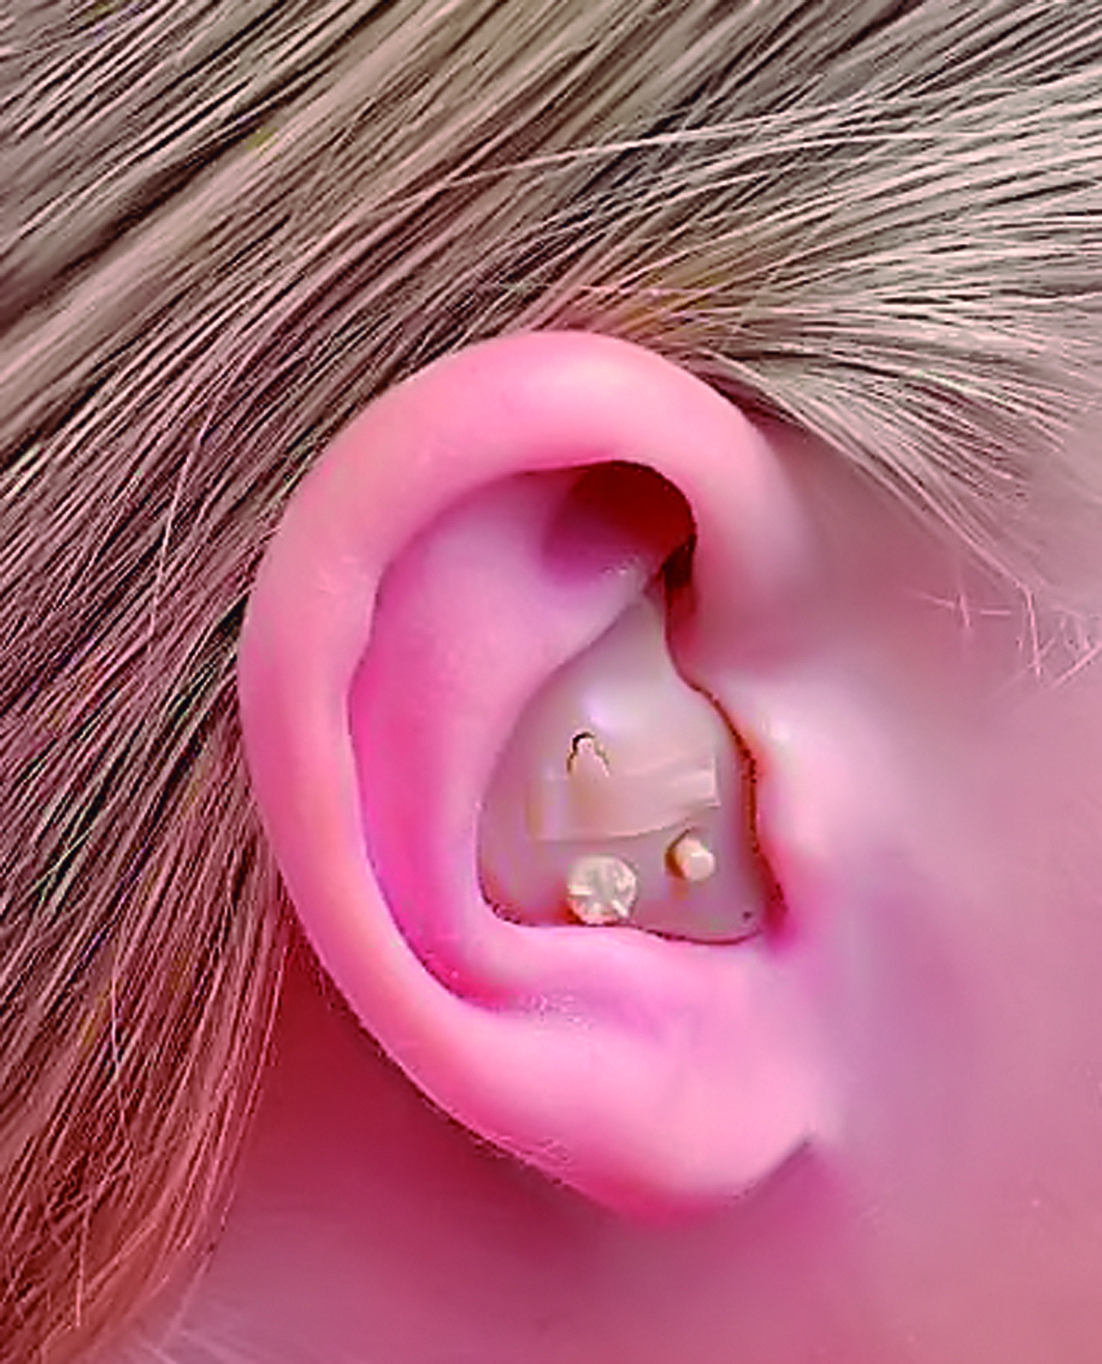 Audífonos intrauriculares (dentro del oído)